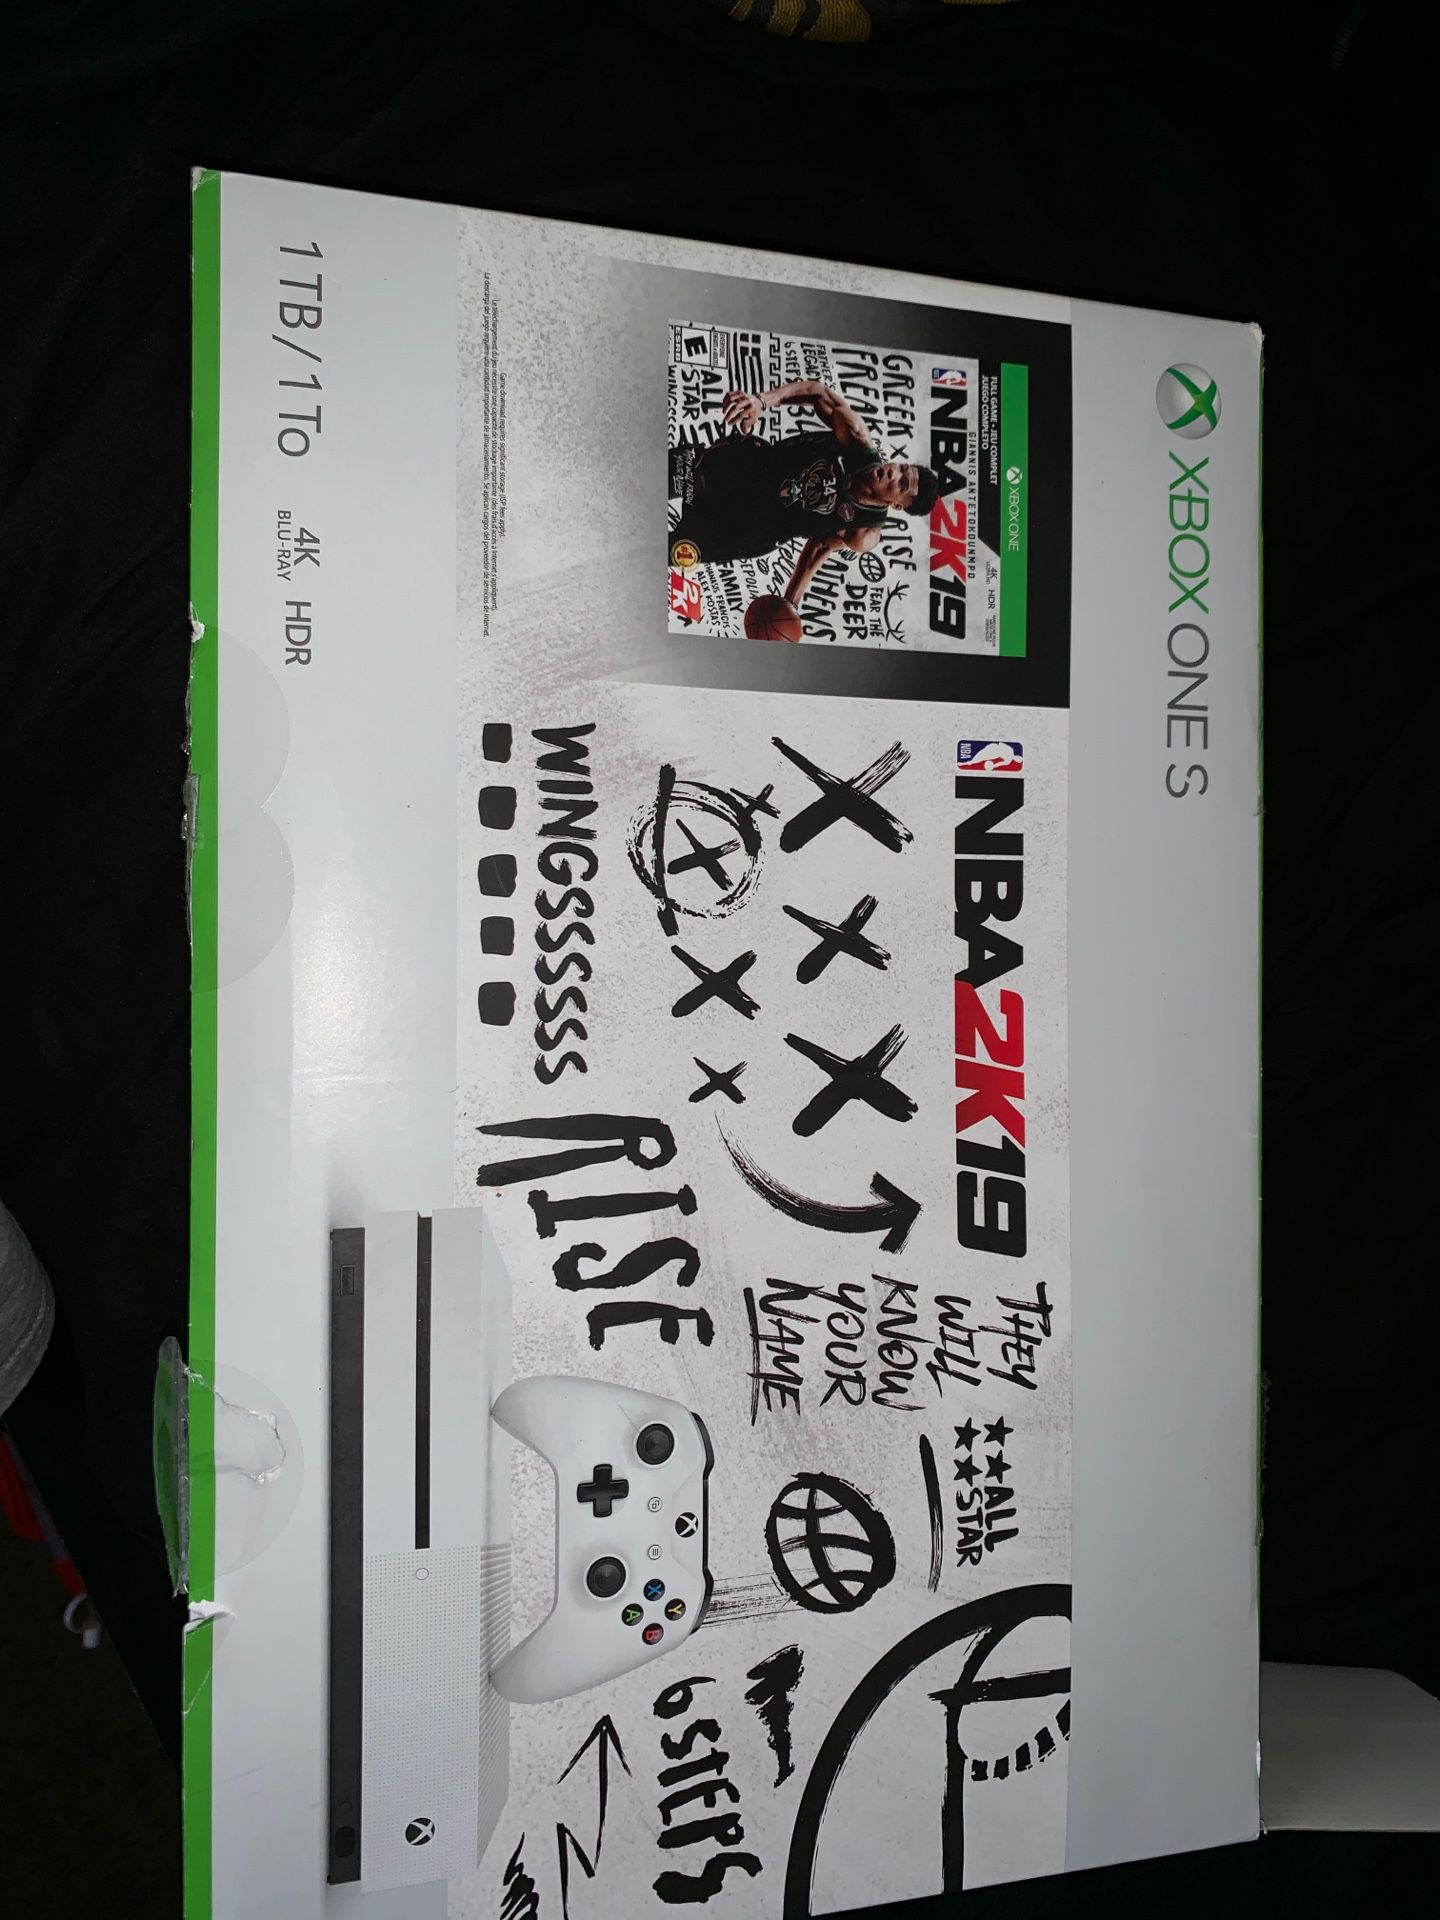 Xbox one a 1TB